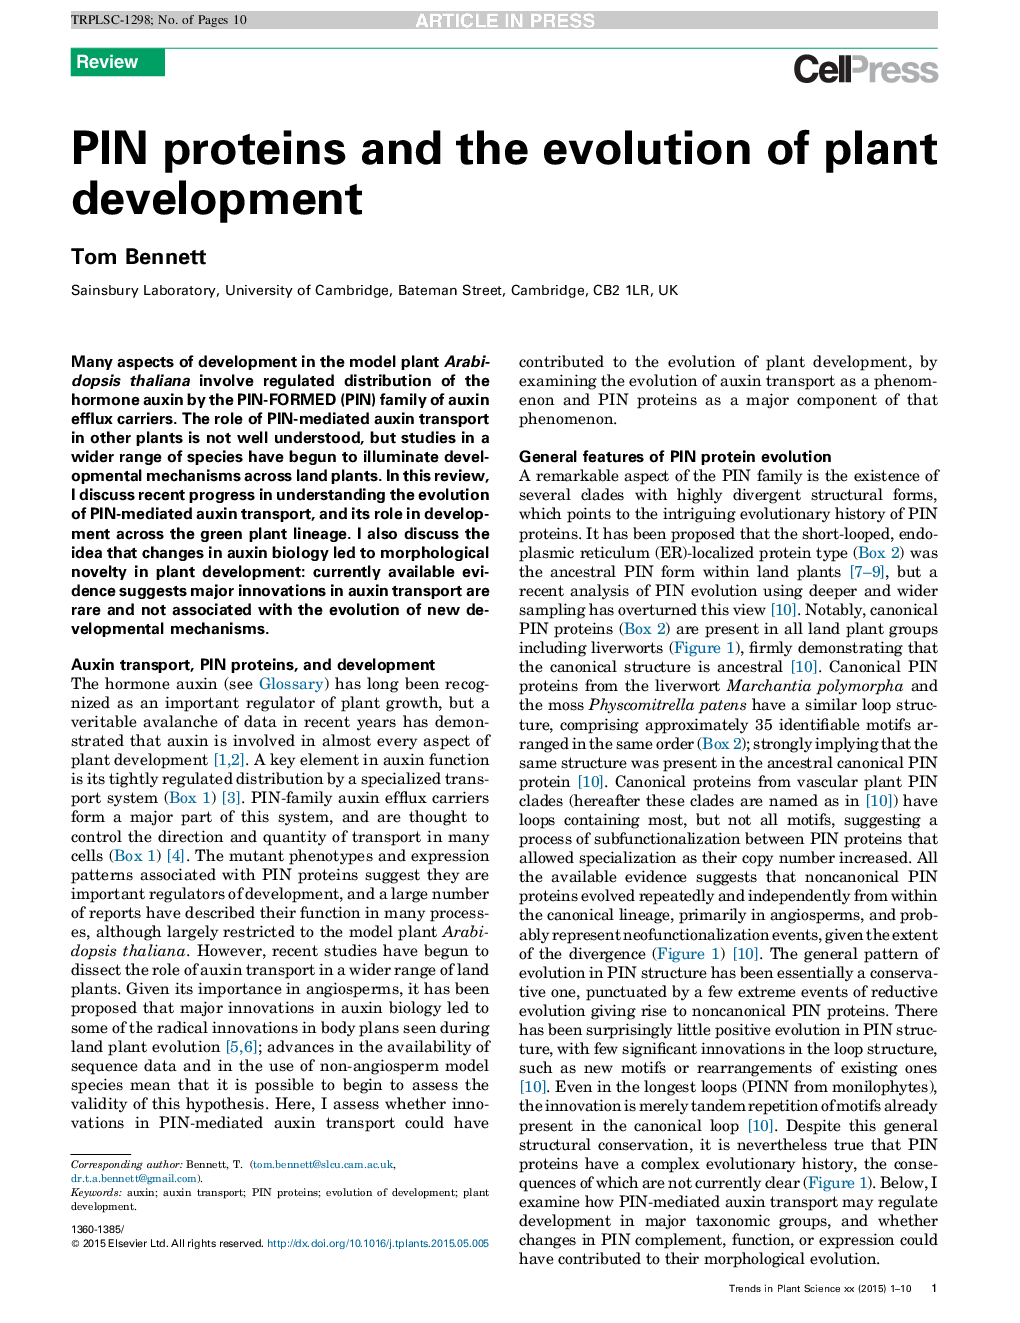 پروتئین های پین و تکامل توسعه گیاهان 